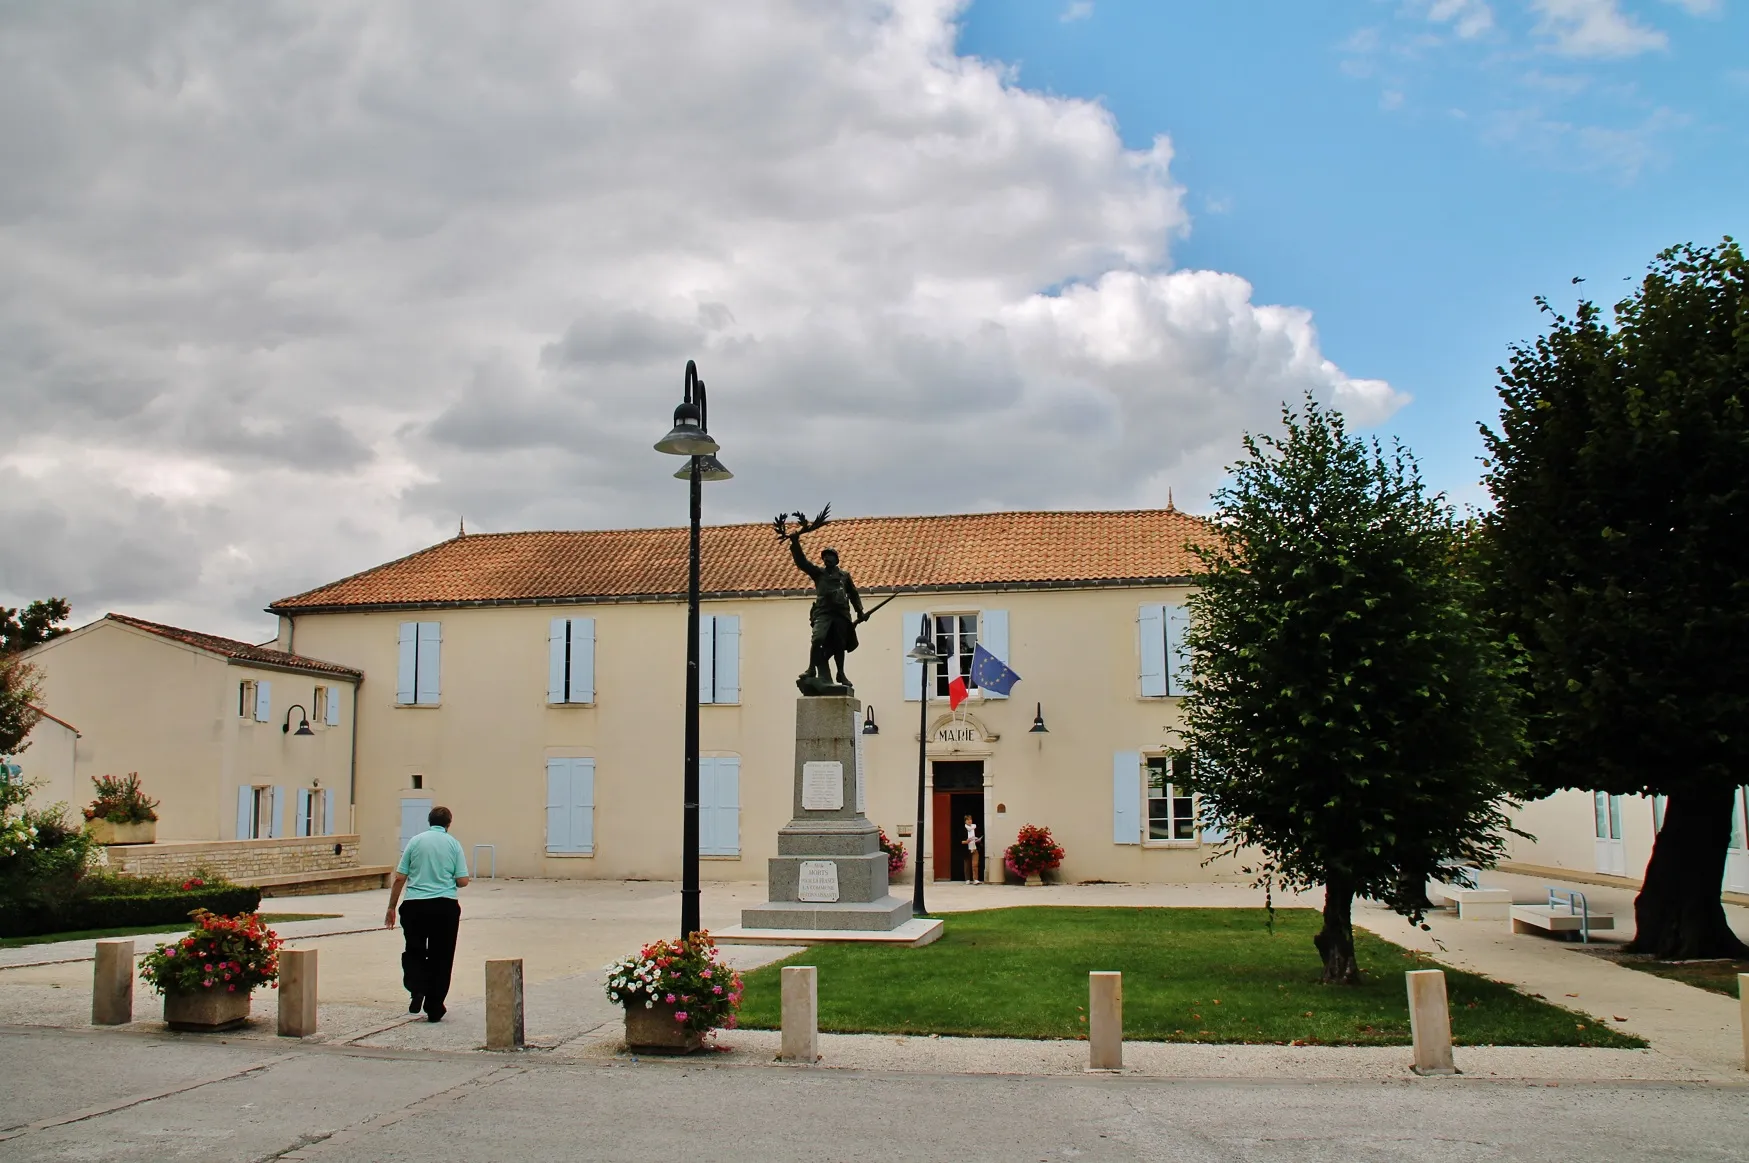 Photo showing: La Mairie